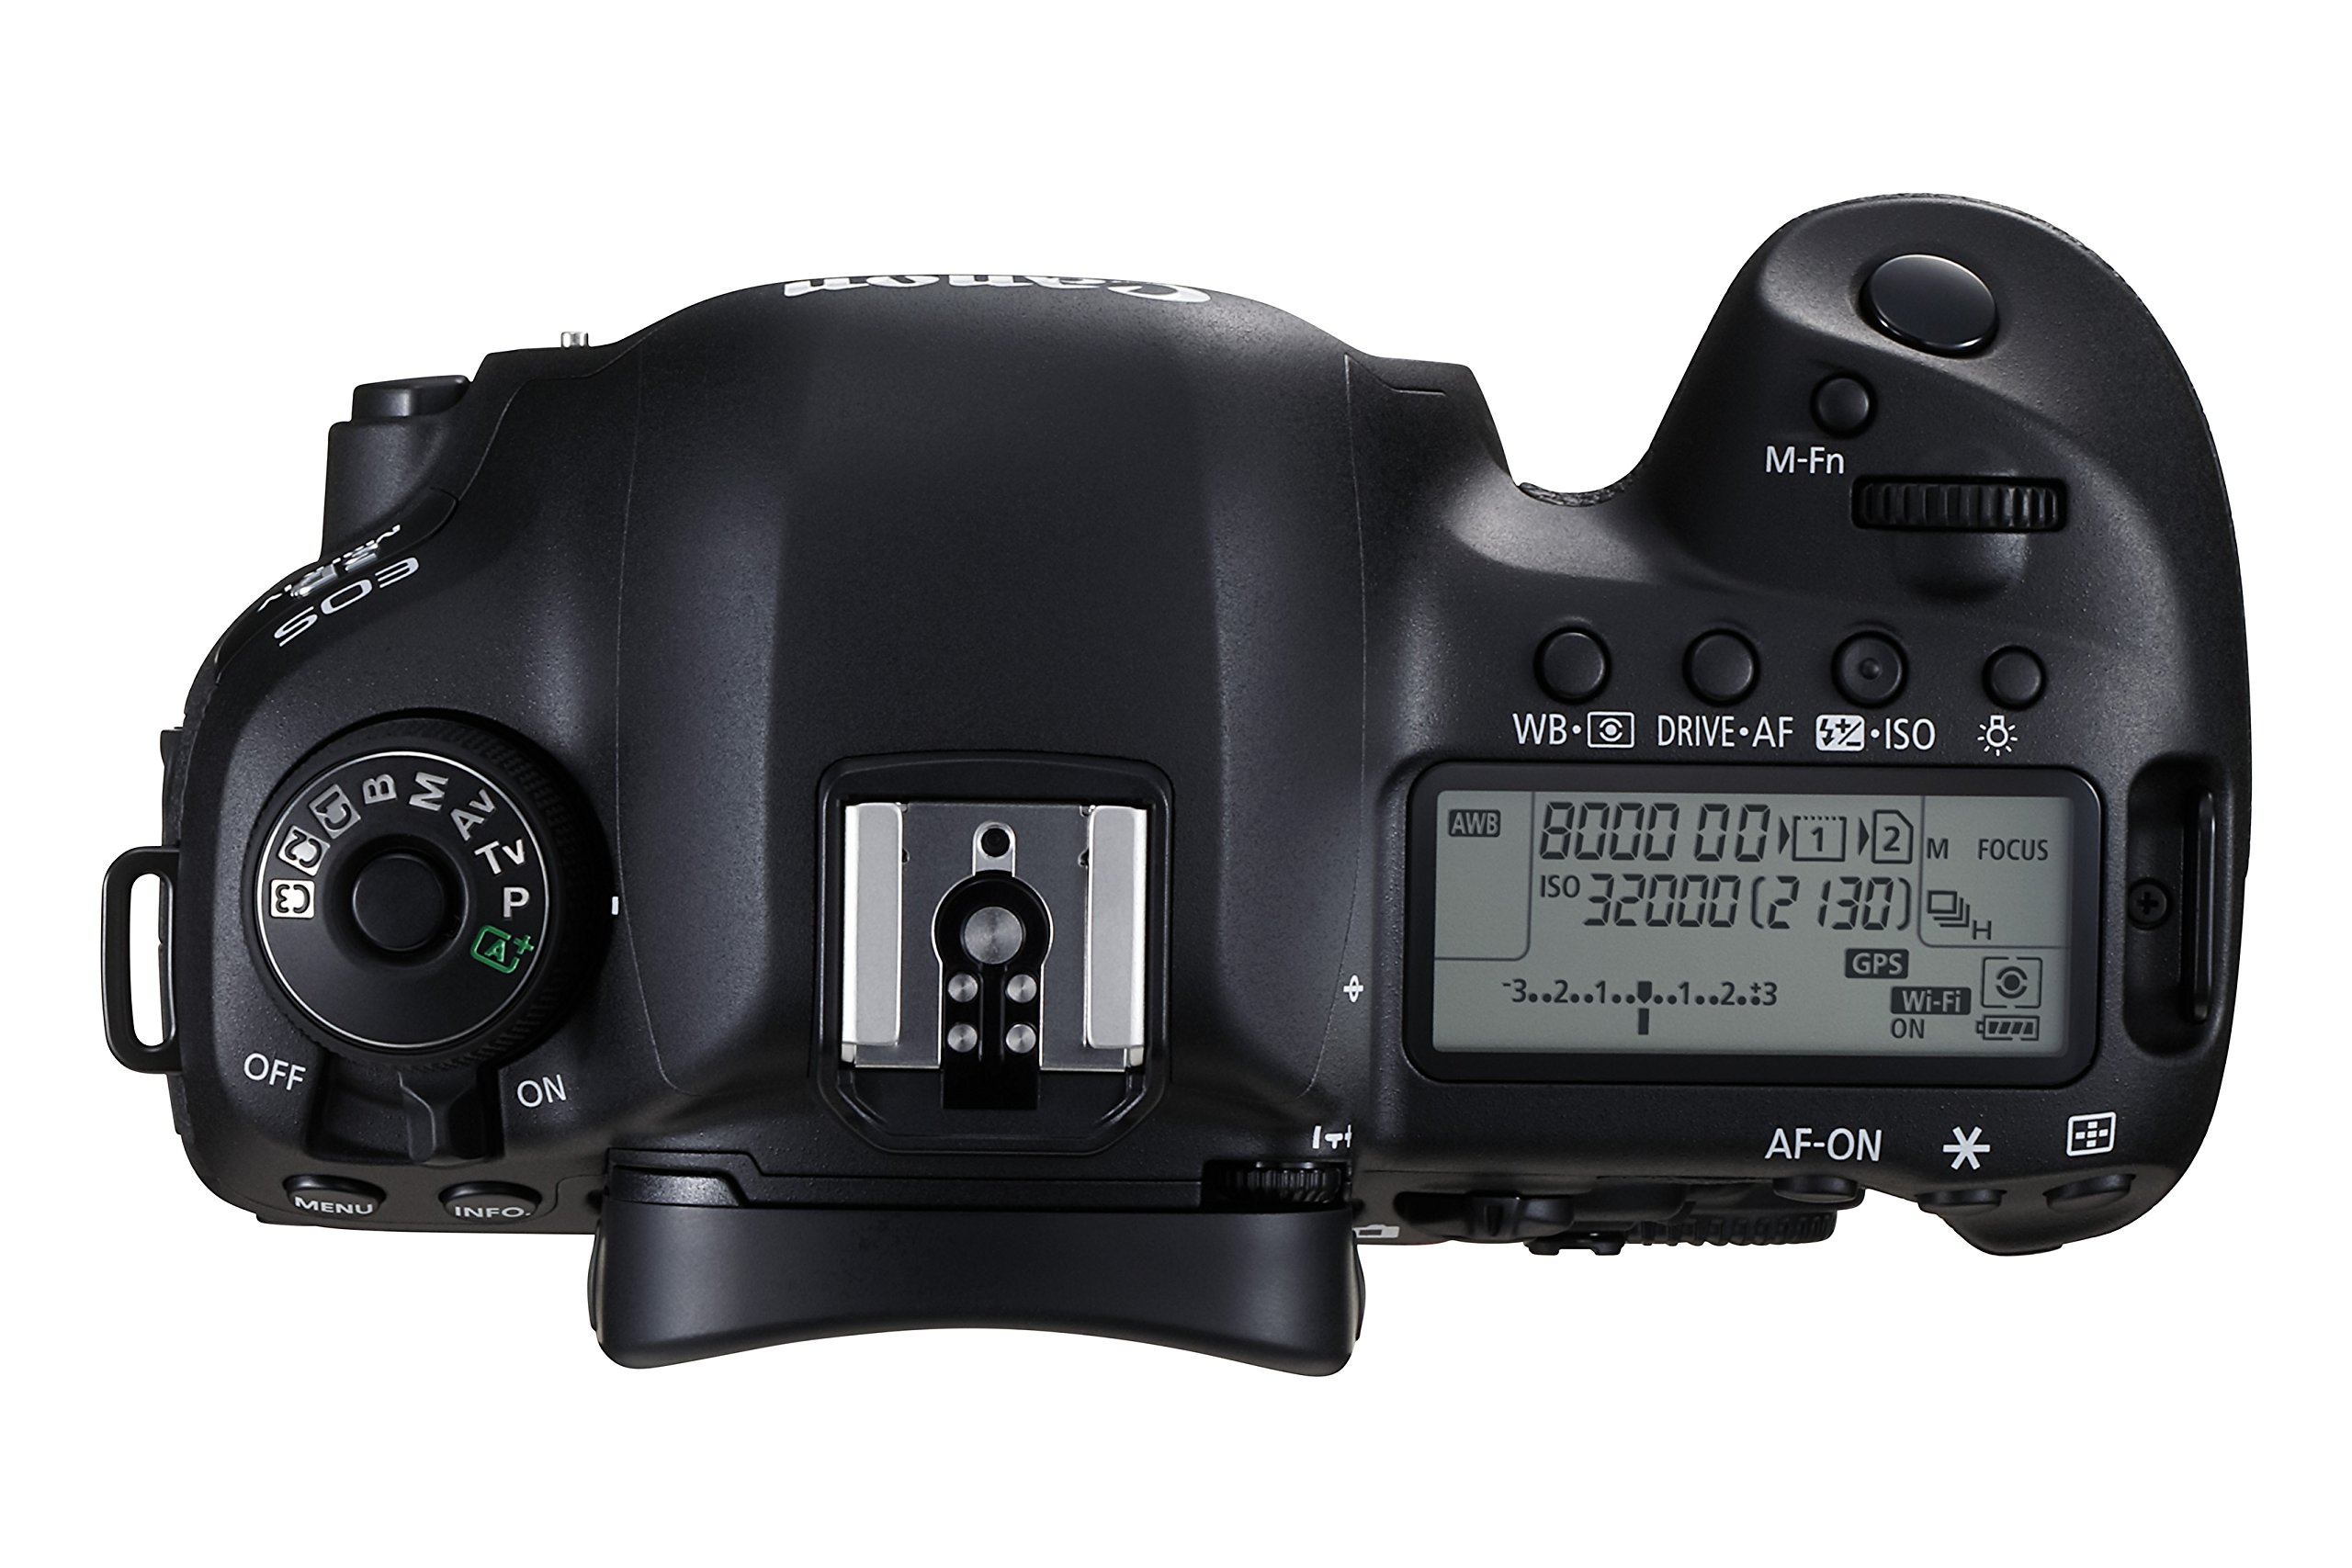 Canon EOS 5D Mark IV Full Frame Digital SLR Camera Body Battery Bundle